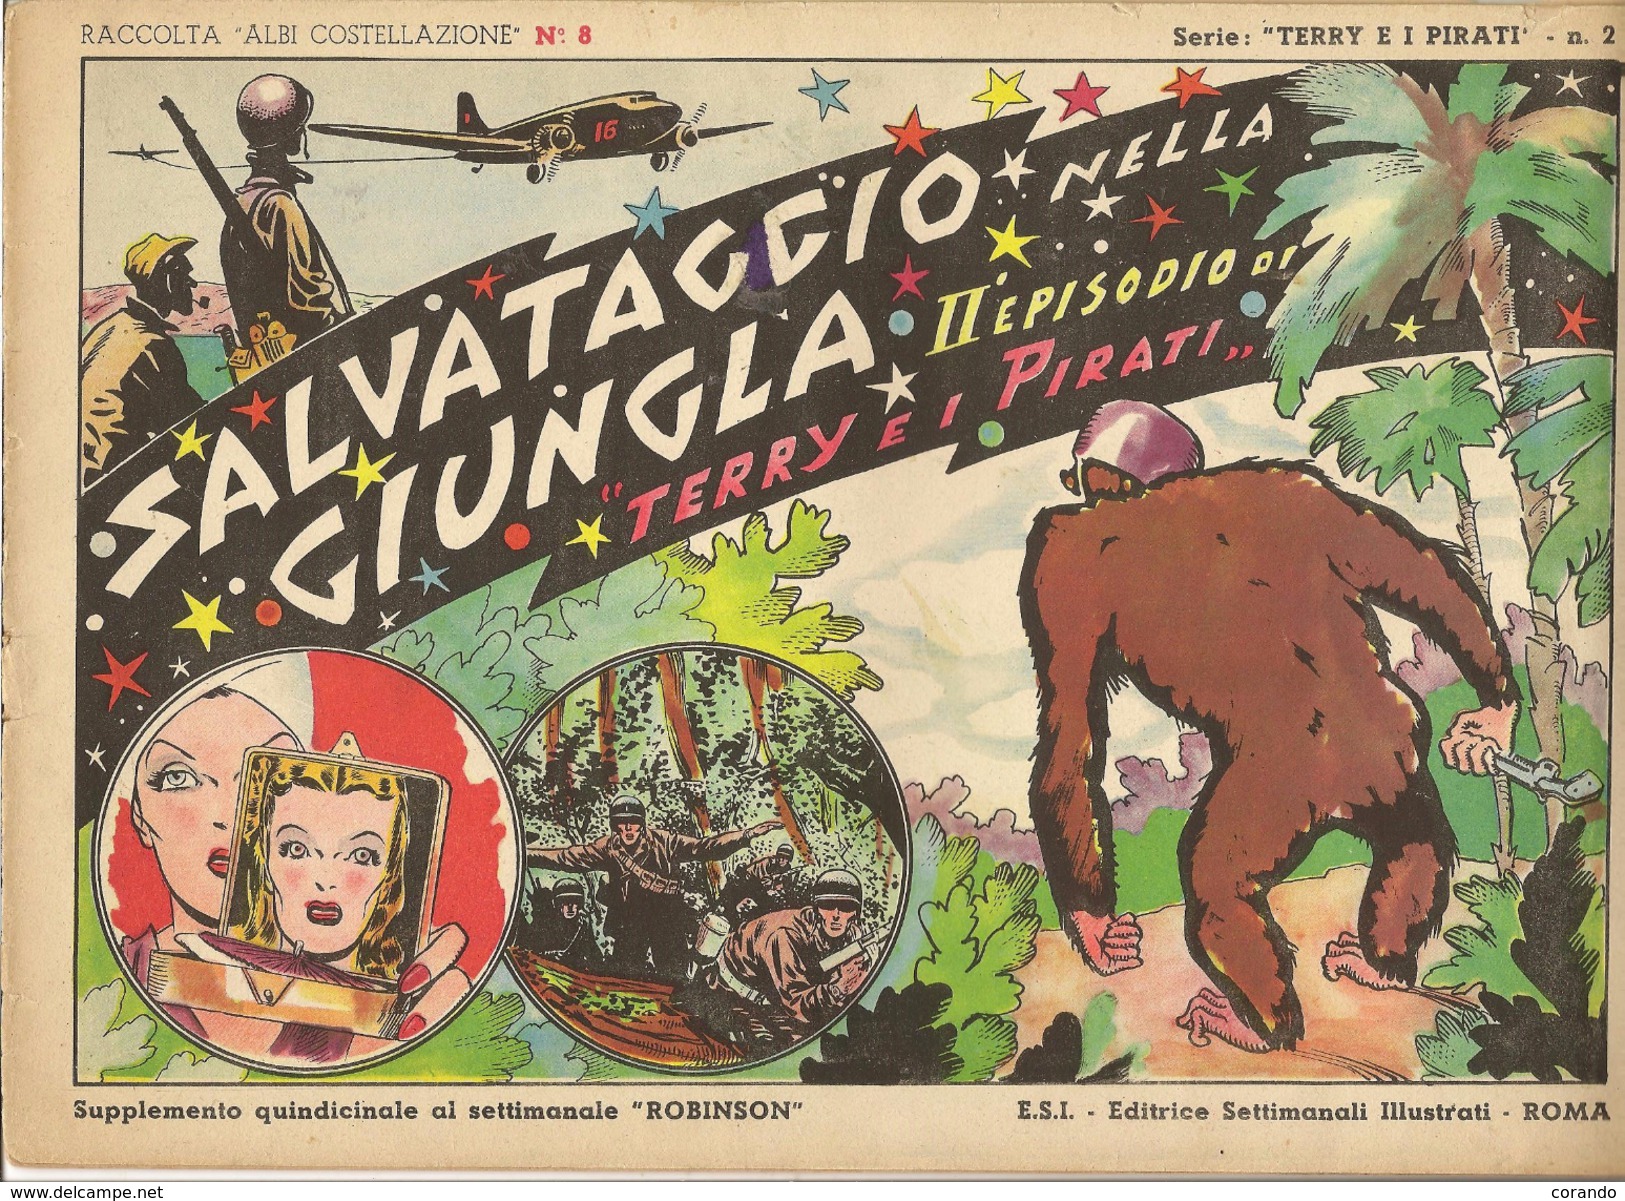 ALBI COSTELLAZIONE N. 8 - TERRY E I PIRATI- SALVATAGGIO NELLA GIUNGLA-1947 - Comics 1930-50